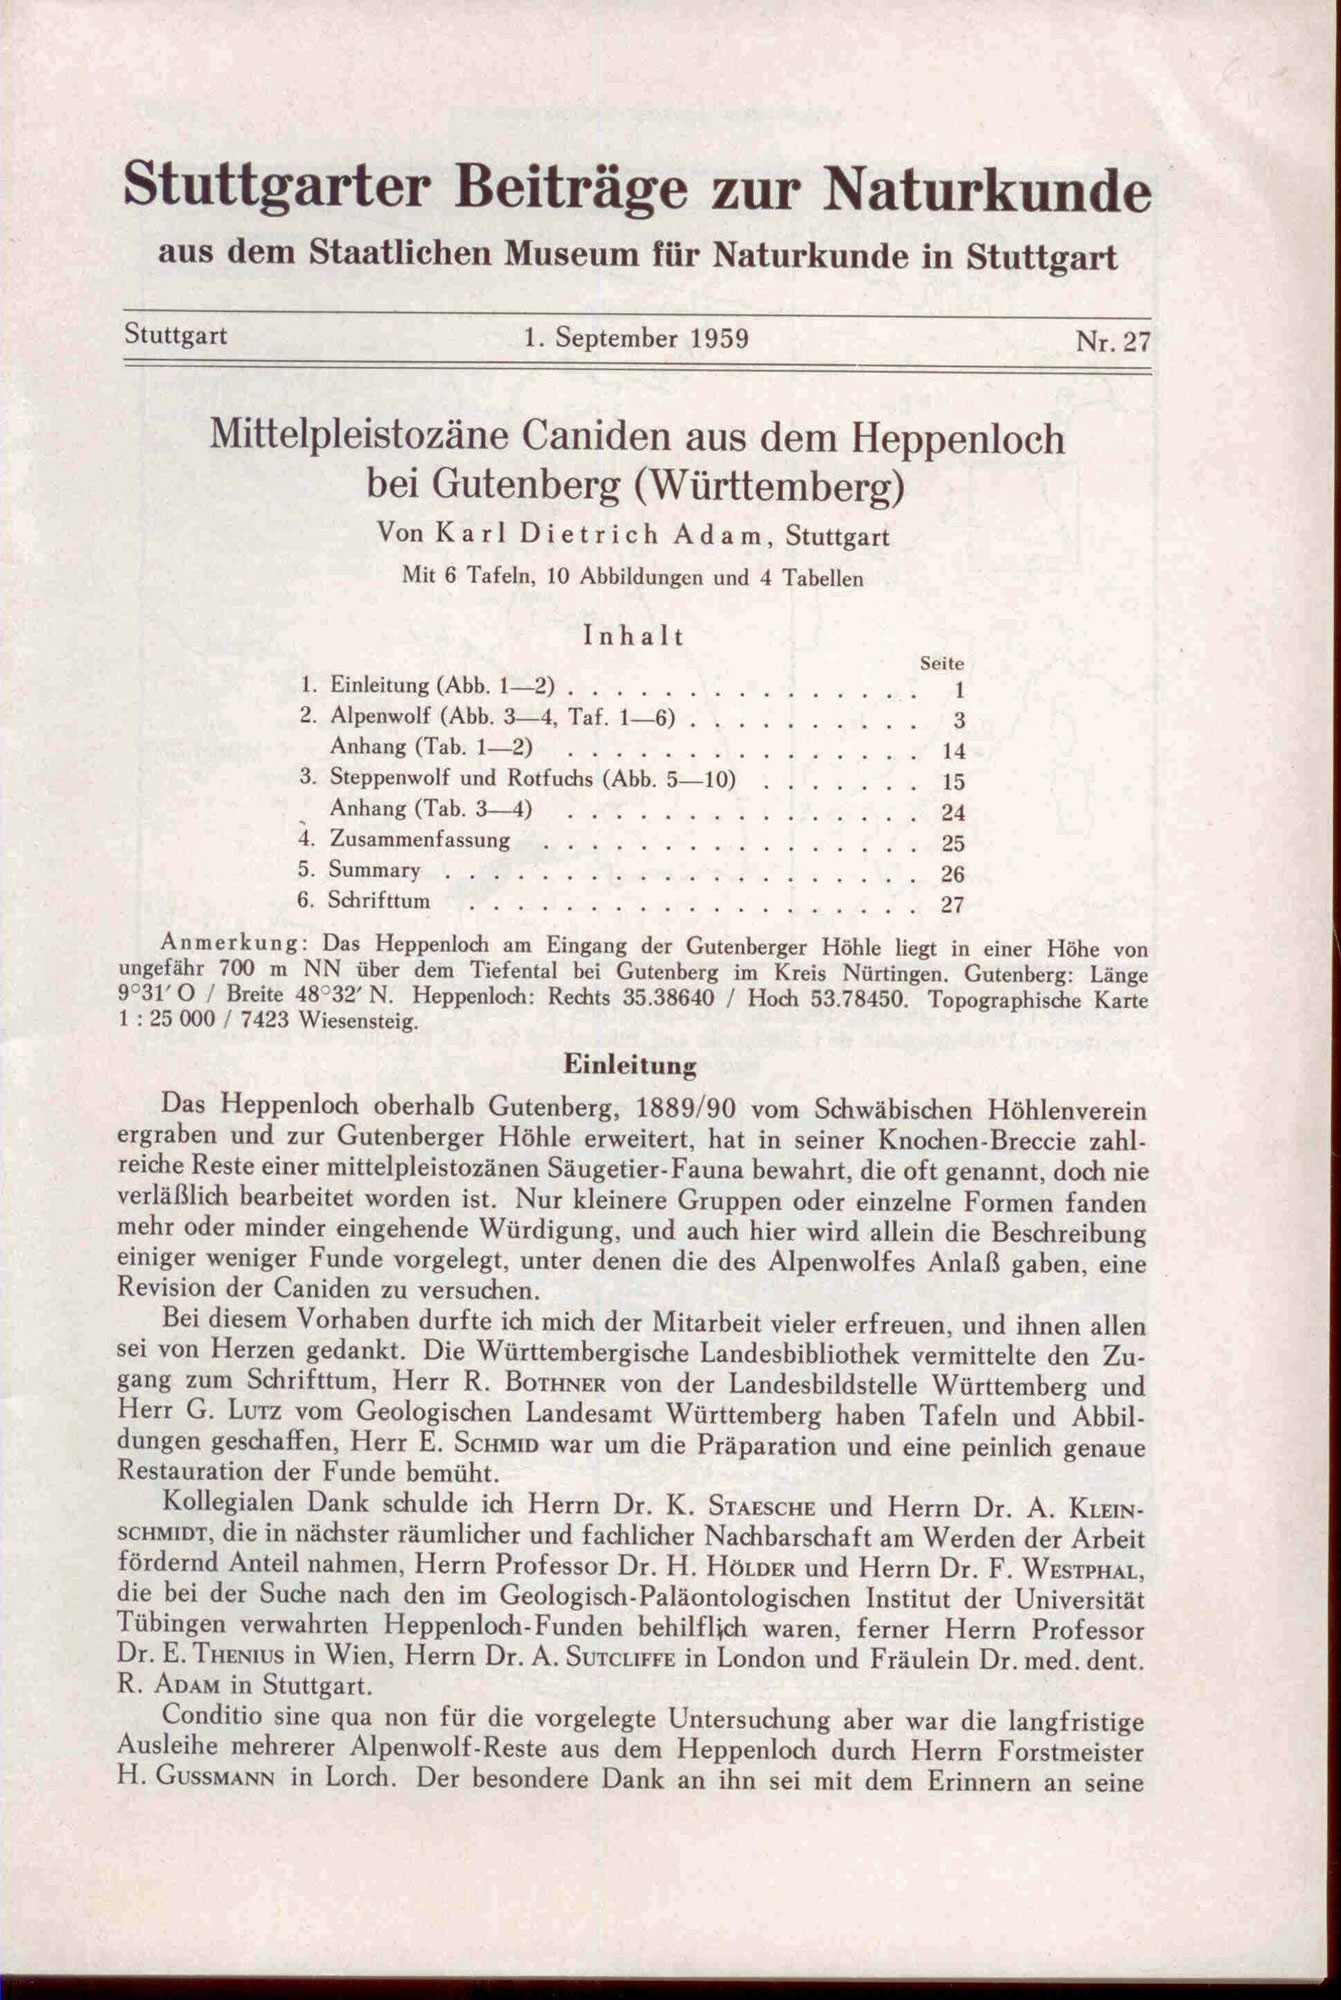 Adam, K. D.: Mittelpleistozäne Caniden aus dem Heppenloch bei Gutenberg (Württemberg).